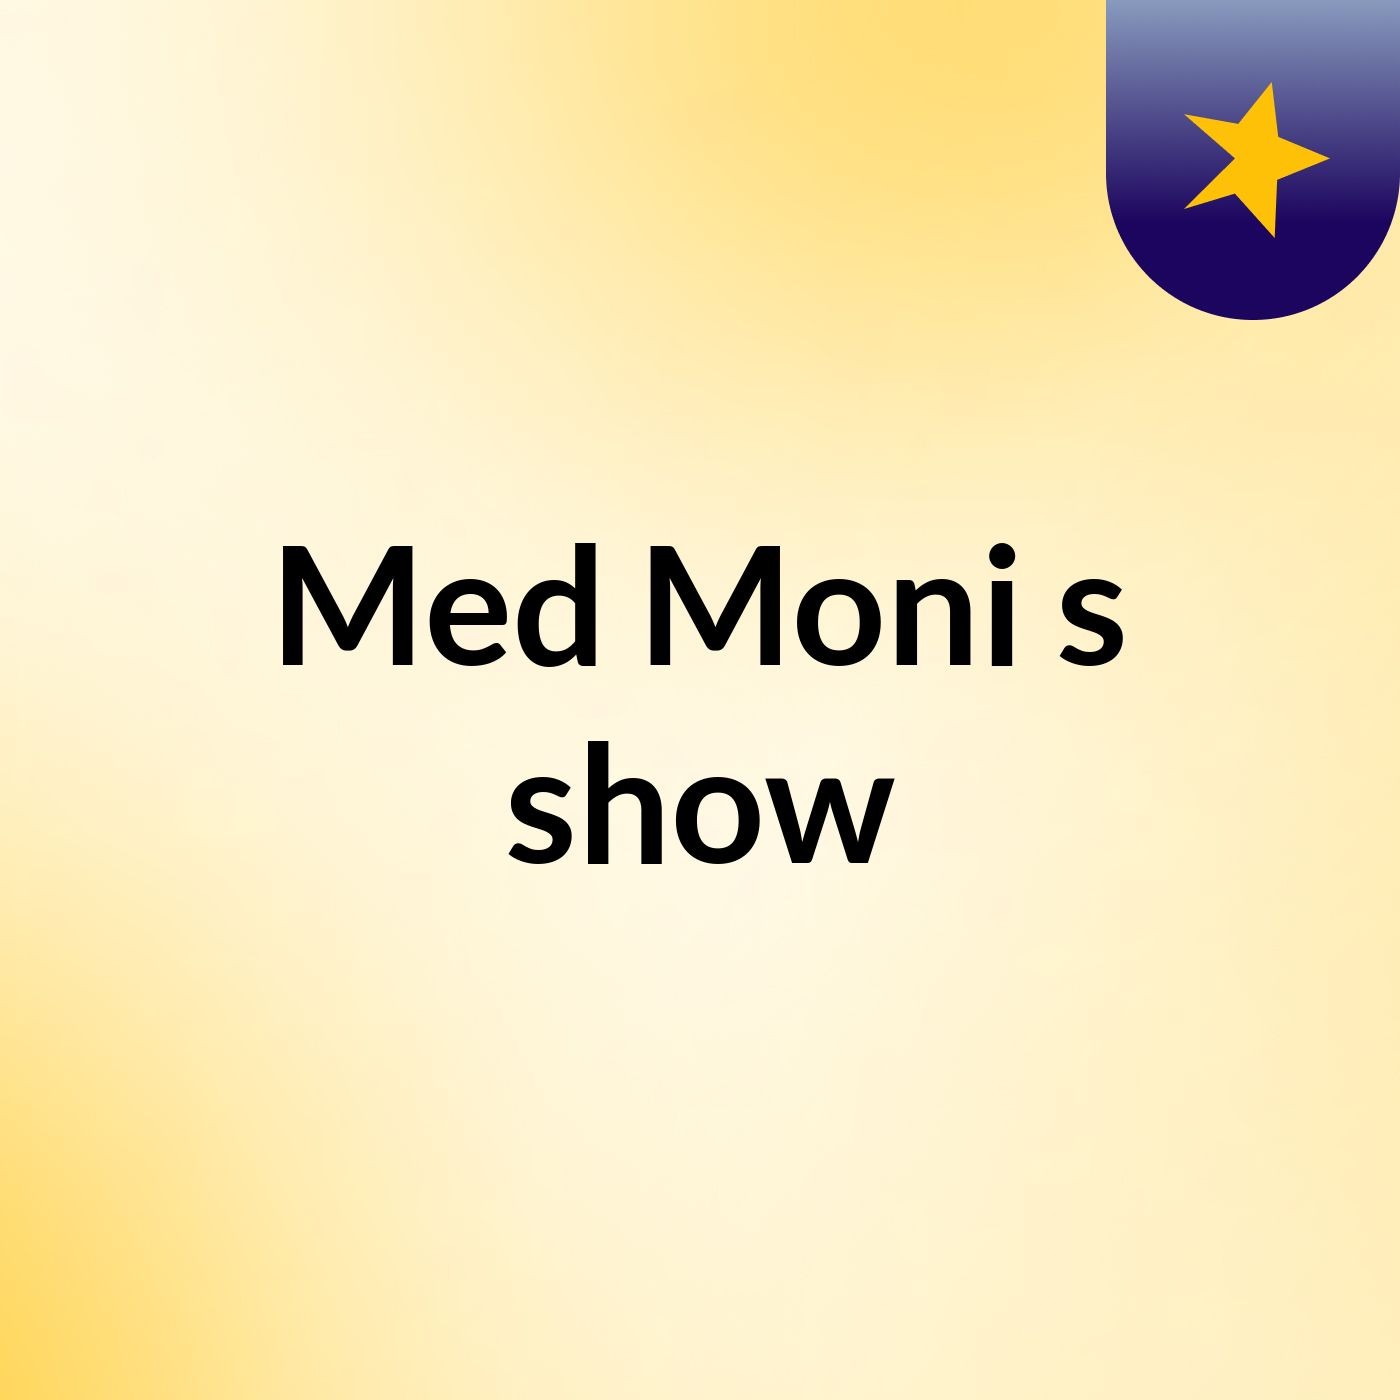 Med Moni's show